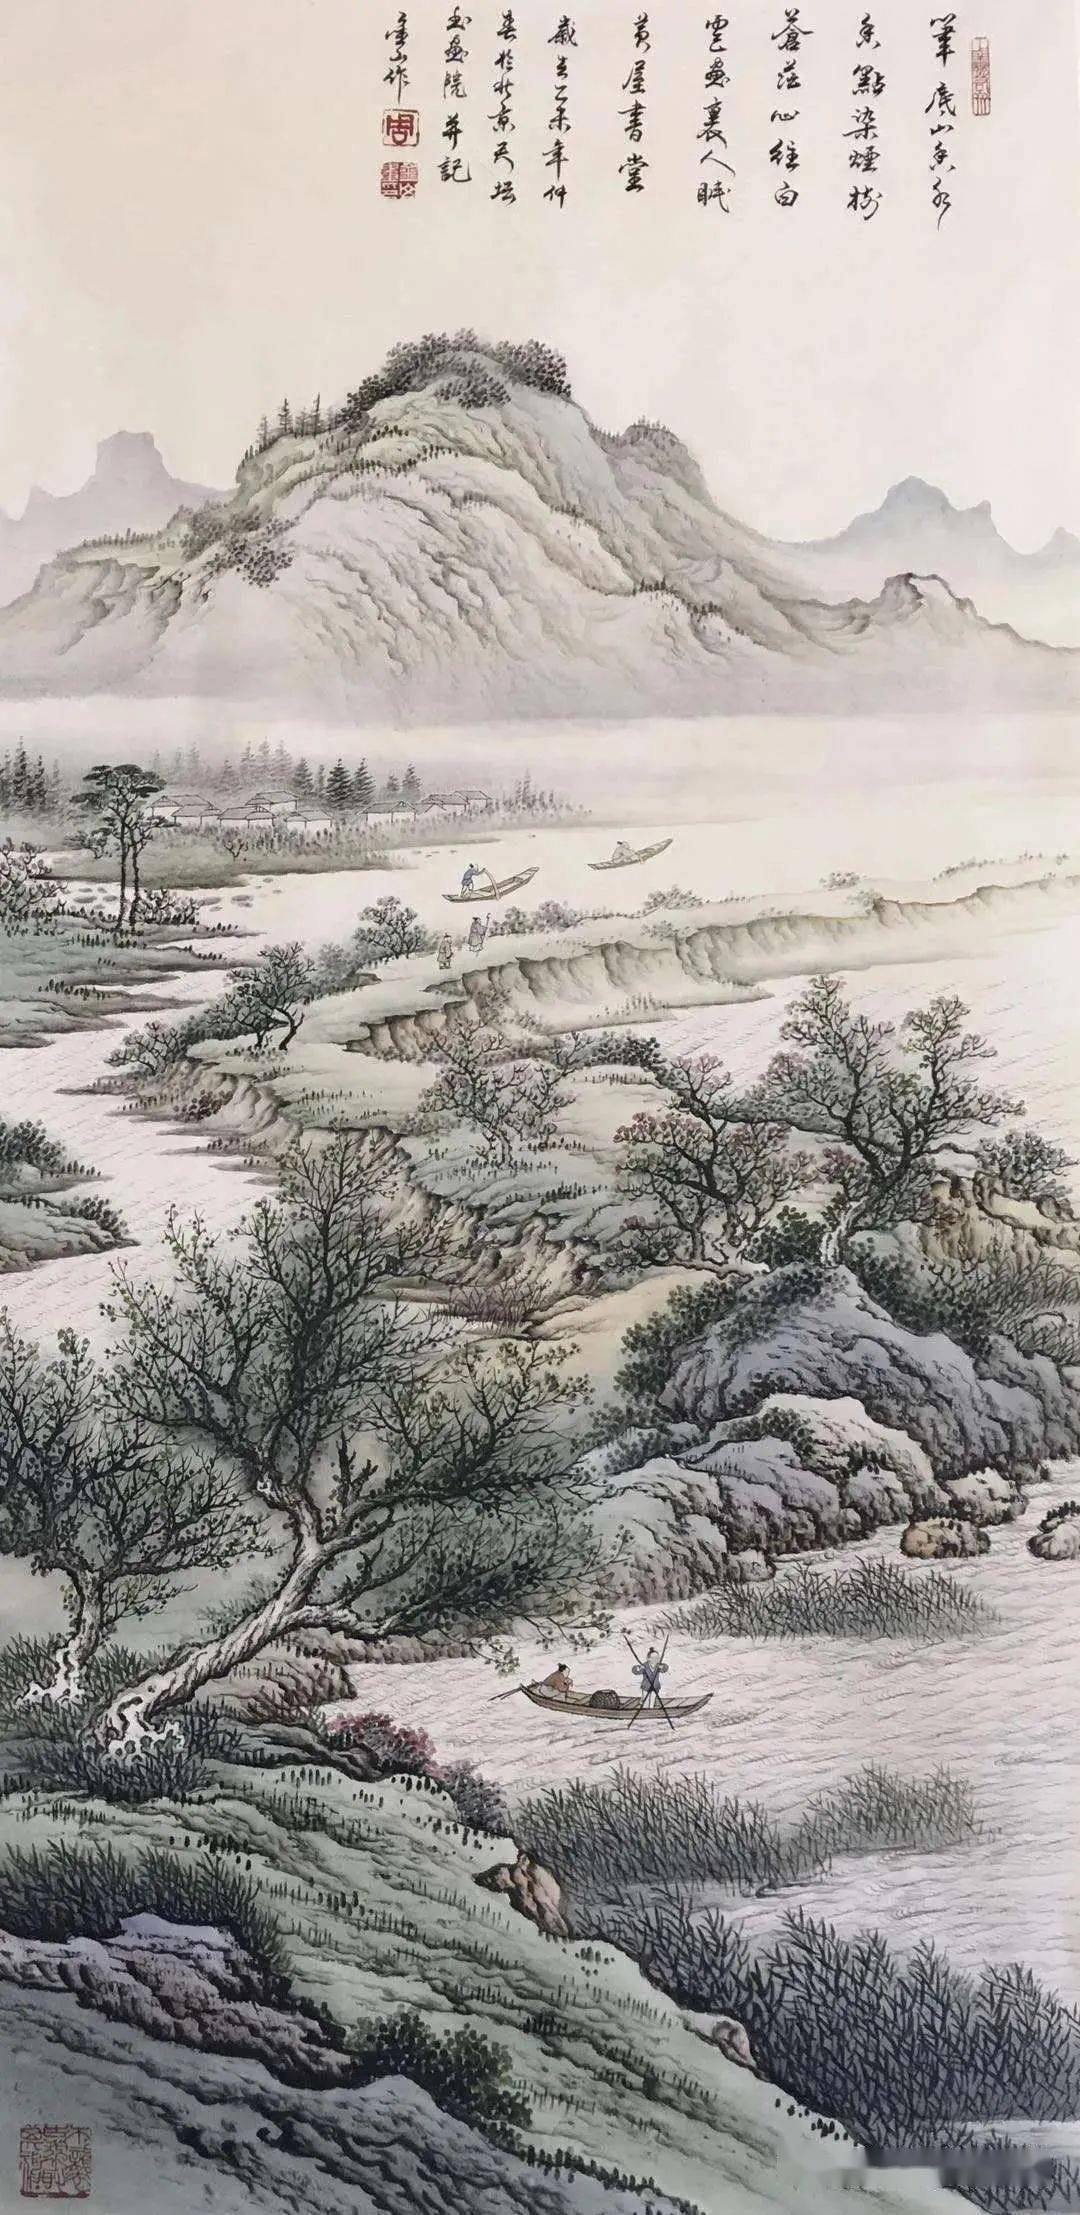 在中国山水画史上,工笔山水曾以皇家风范鼎足画坛,涌现过许多载入史册